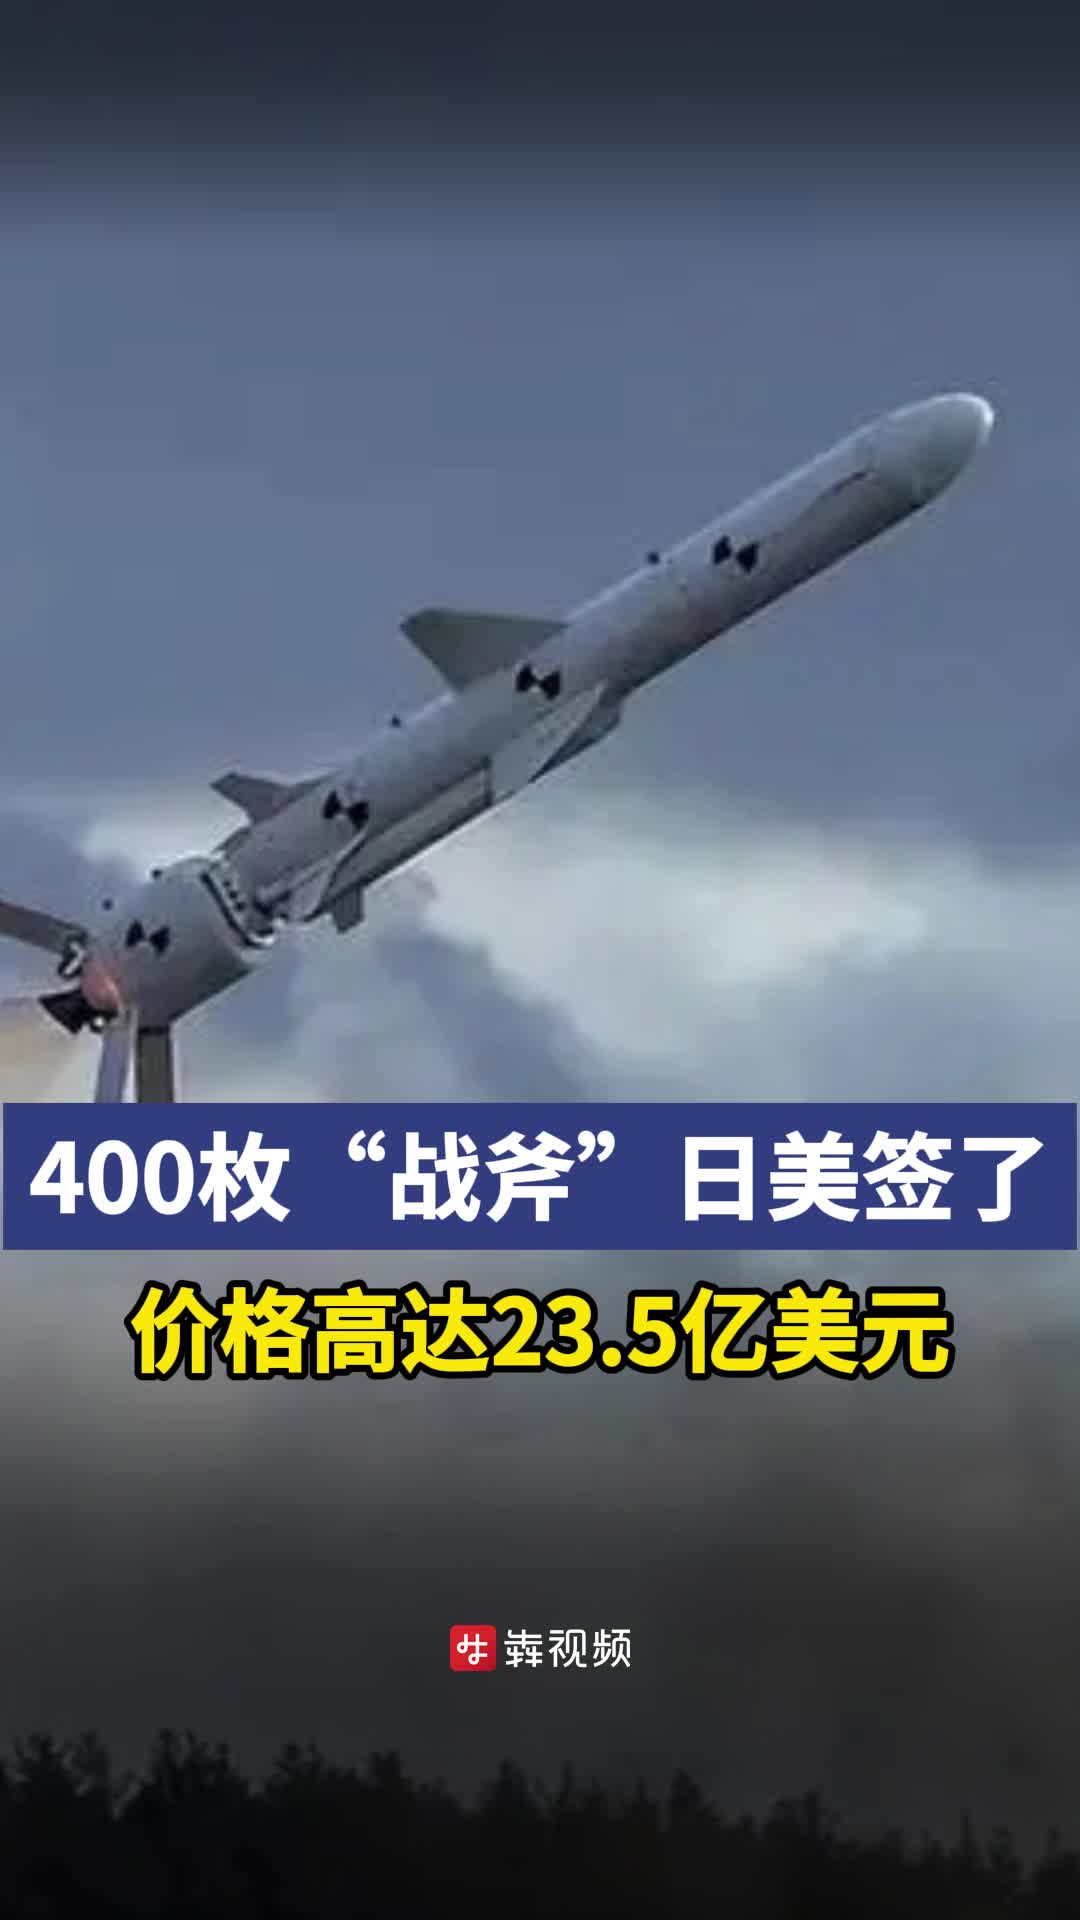 日本就购买战斧导弹与美国签订协议-三湘都市报